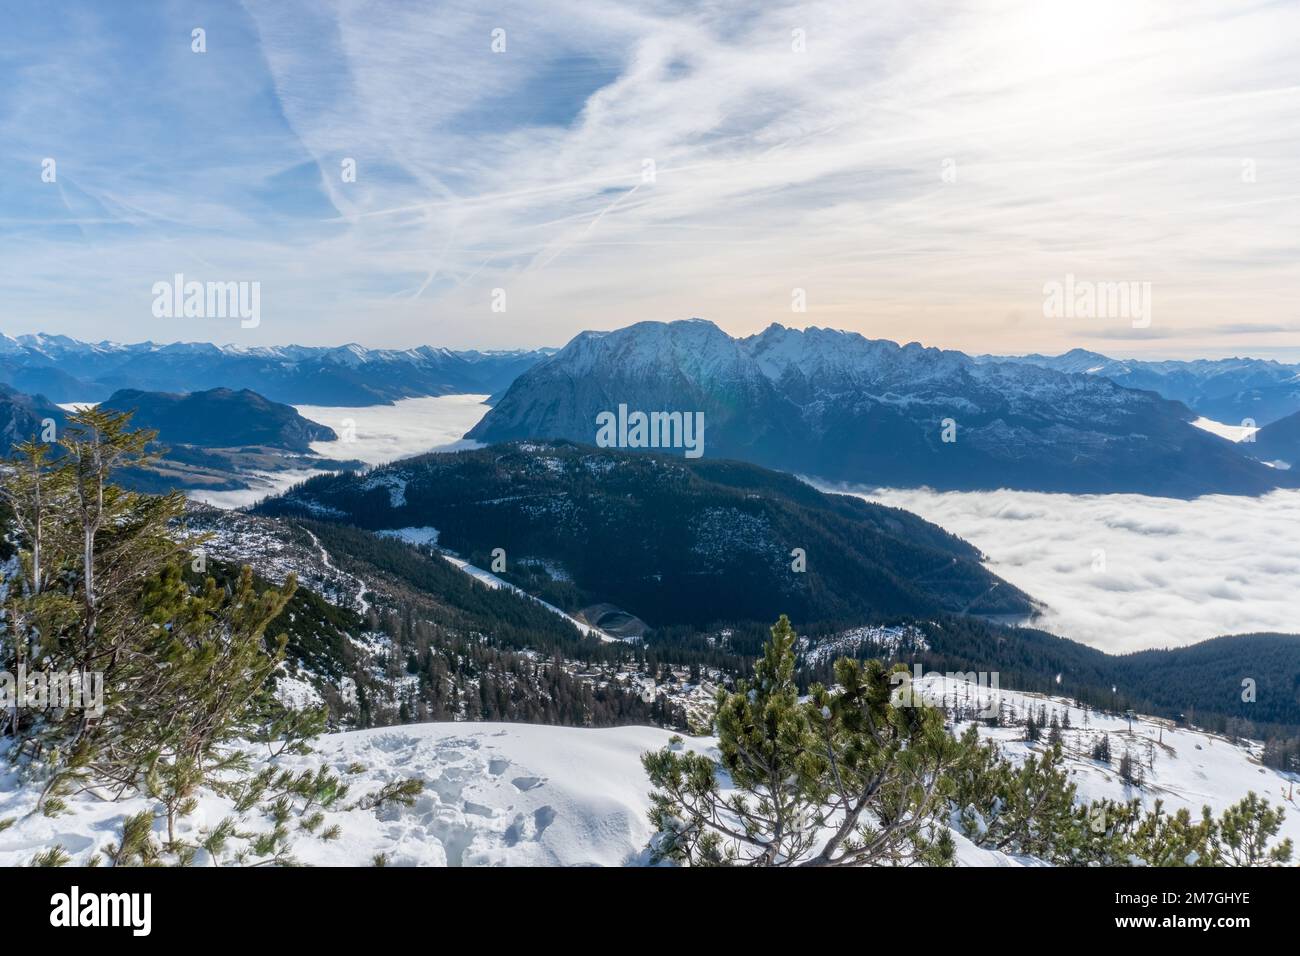 Grimming montagna nella regione di Ennstal in Stiria. Vista dalla stazione sciistica di Tauplitz. Foto Stock